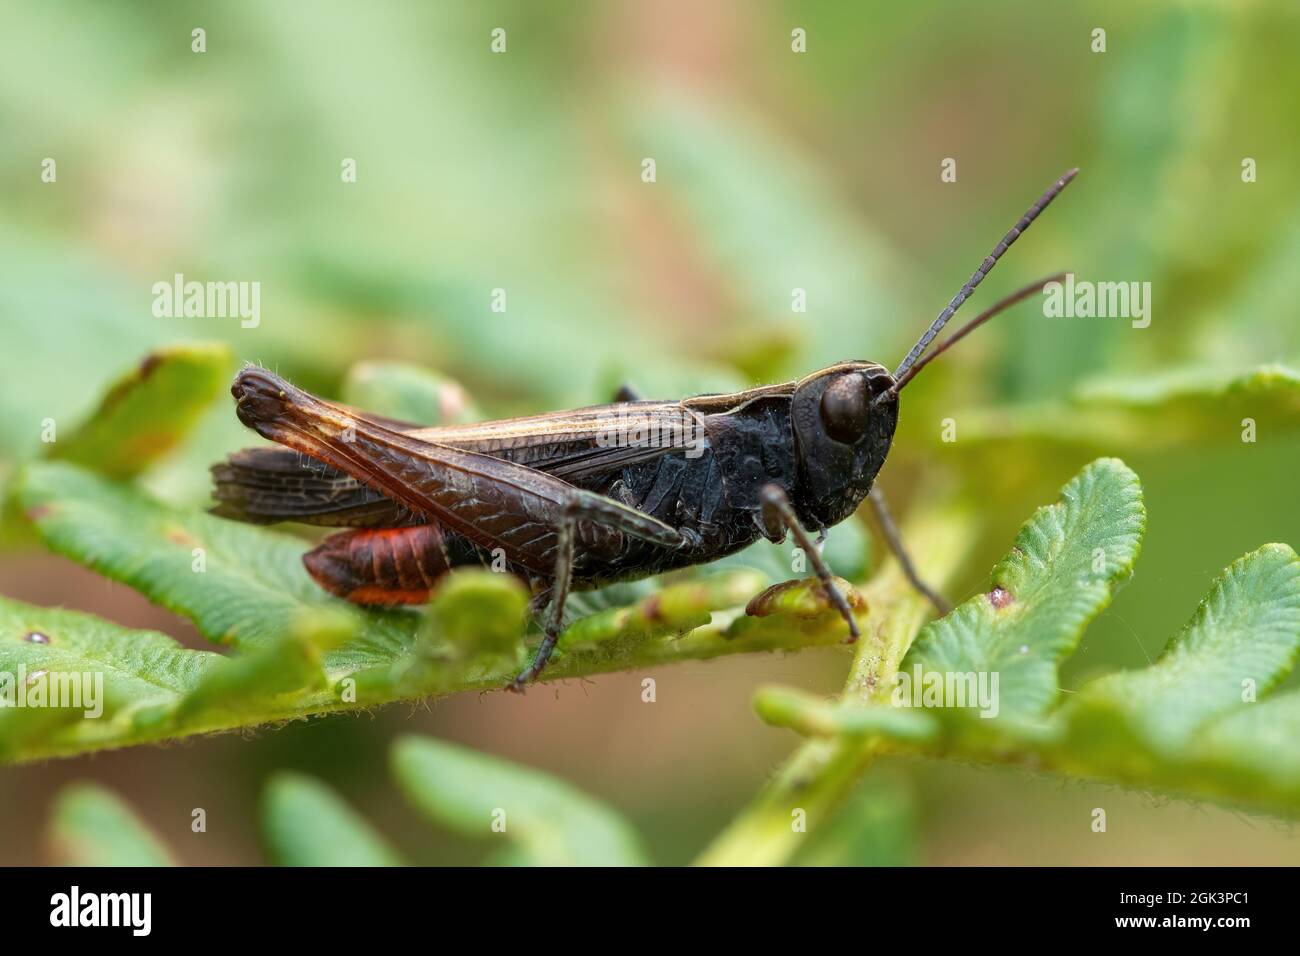 Sauterelle des bois (Omocestus rufipes) sur sauterelle, une espèce de sauterelle à cornes courtes appartenant à la sous-famille des Gomphocerinae, Royaume-Uni Banque D'Images